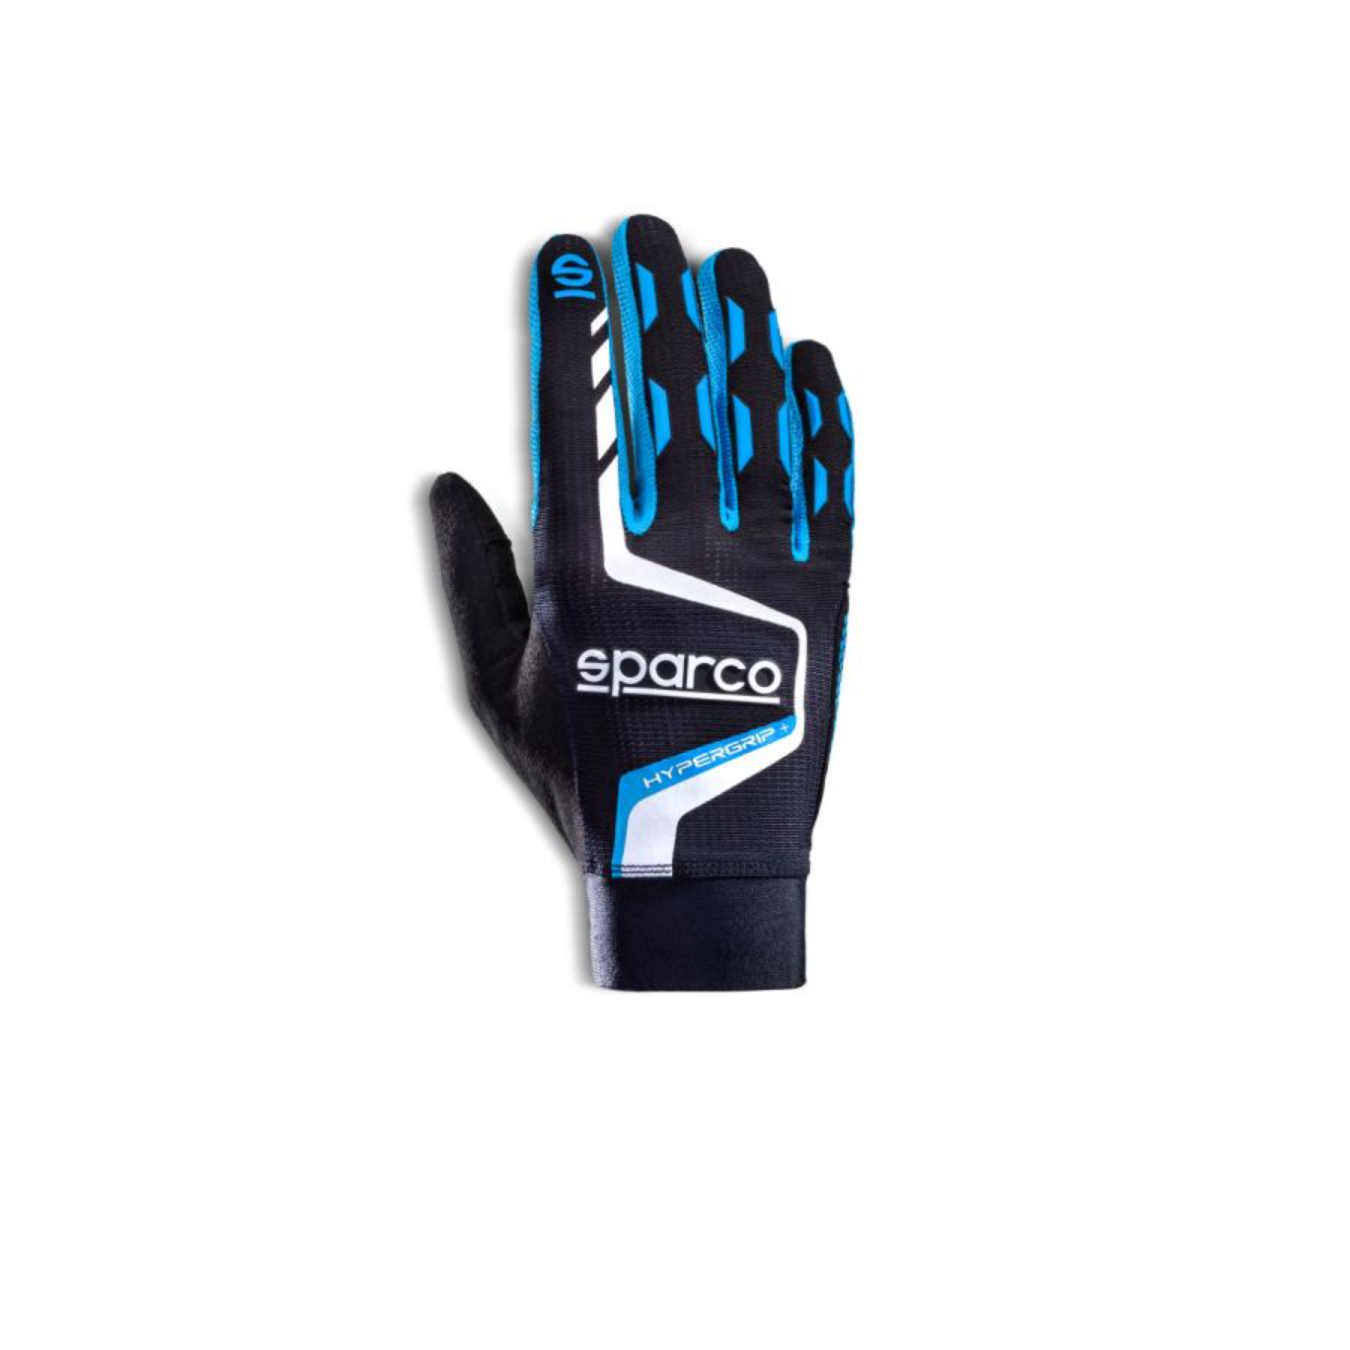 https://www.oreca-store.com/media/catalog/product/s/p/sparco-hypergrip-gloves-5_1.jpg